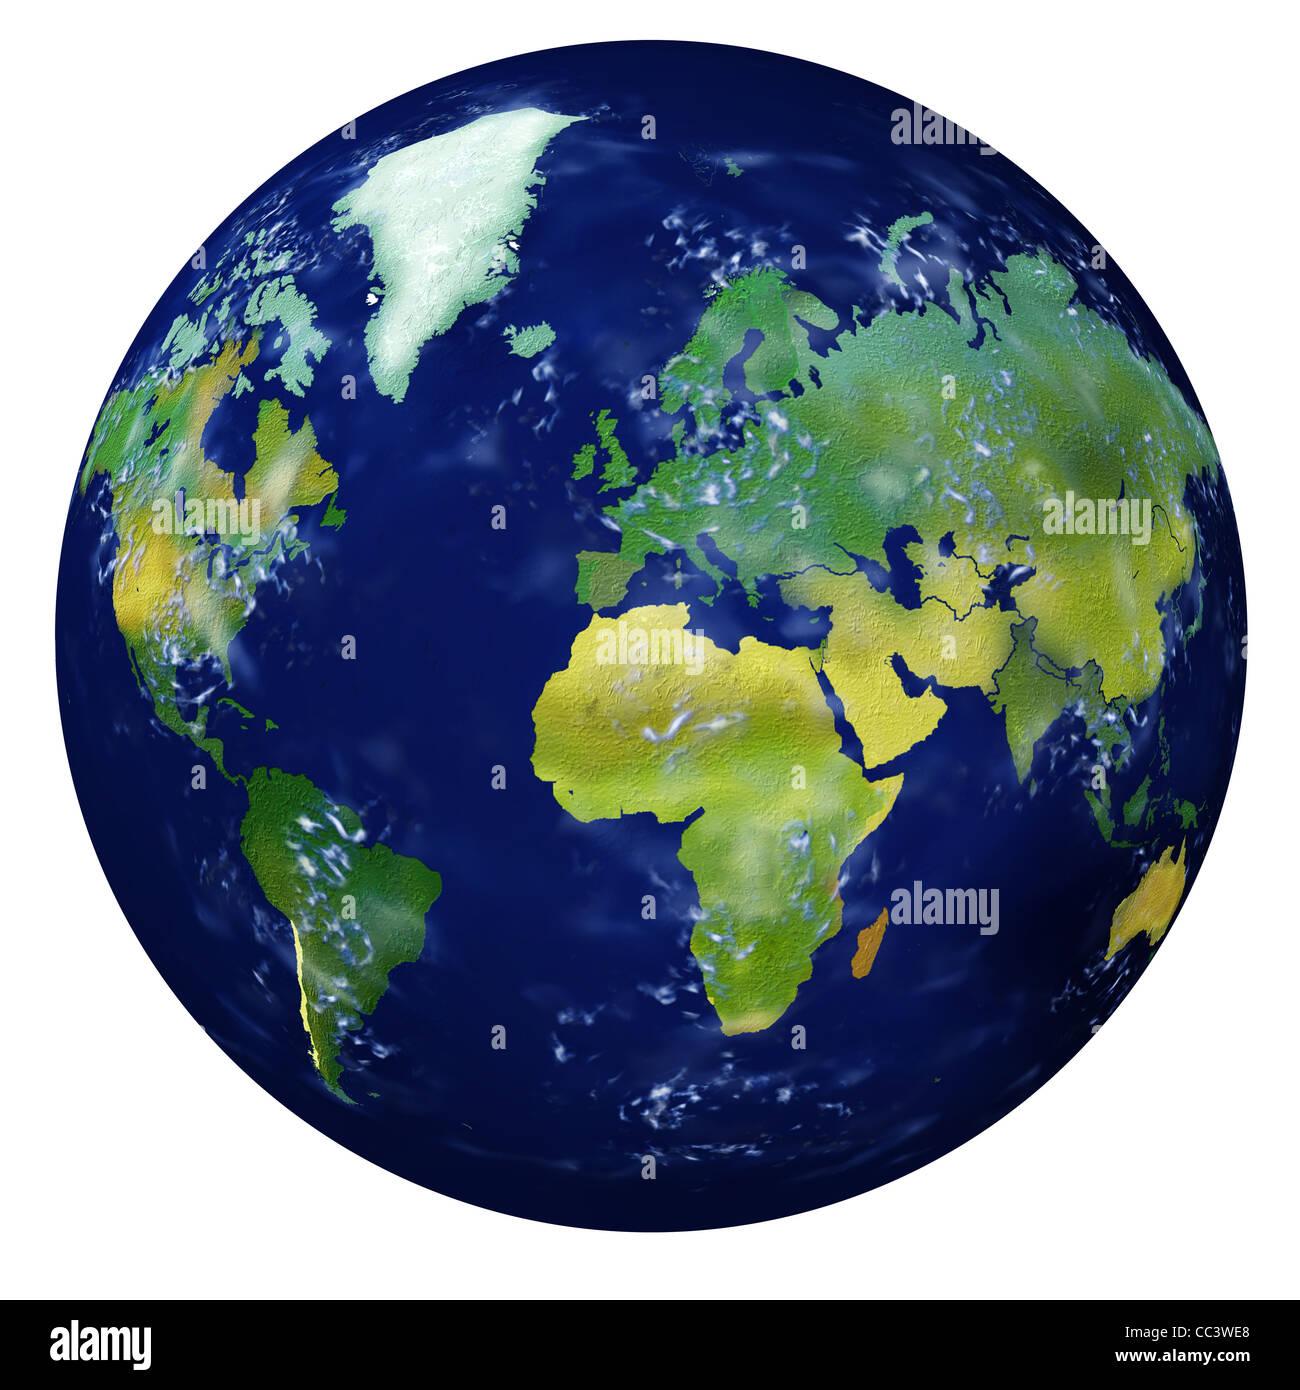 Planetenerde. Sehr detaillierte und realistische Darstellung mit allen großen Kontinenten. Stockfoto